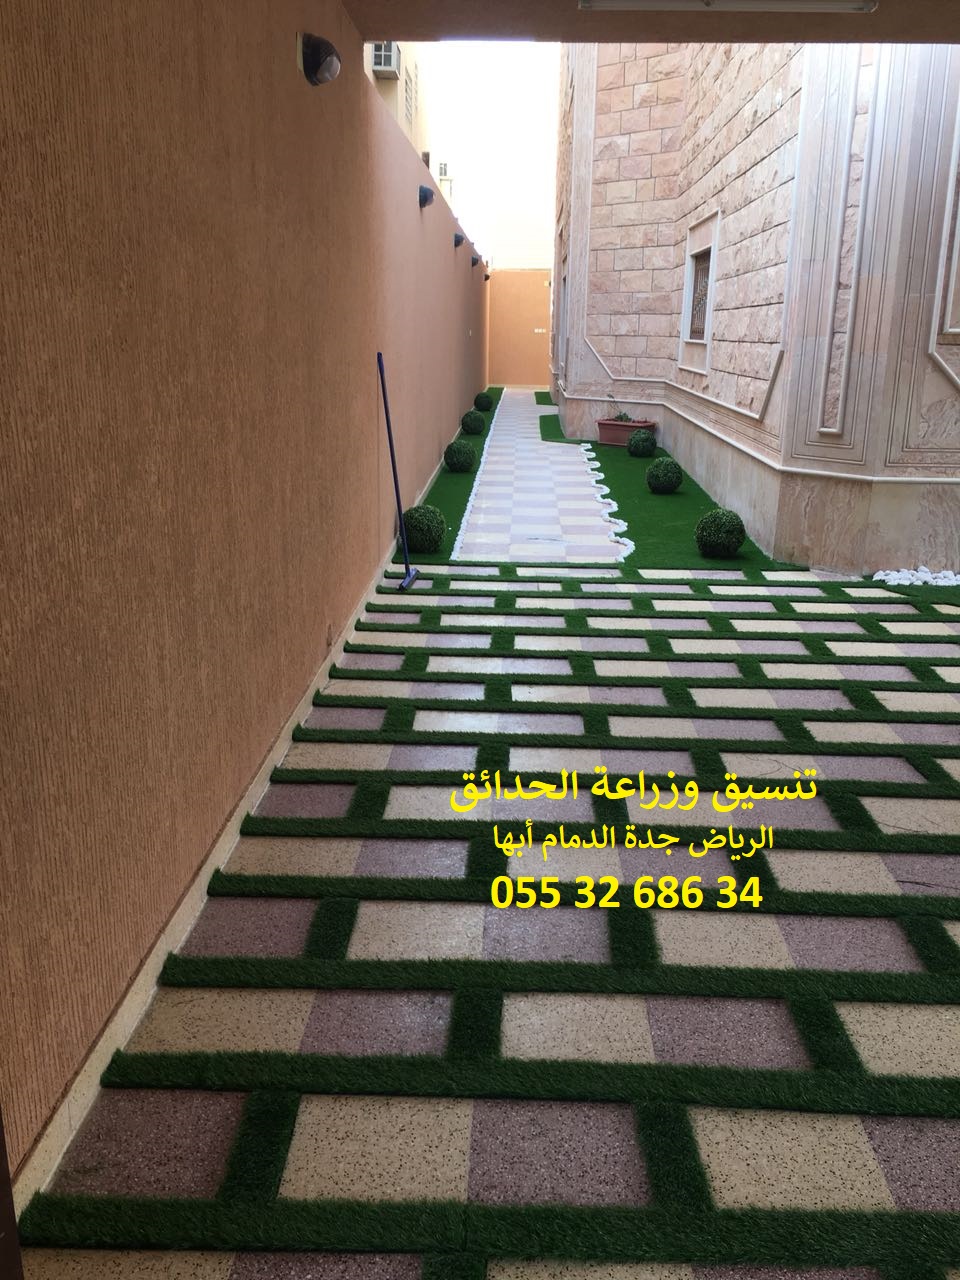 شركة تنسيق حدائق الرياض جدة الدمام ابها 0553268634 P_878h1mgc6